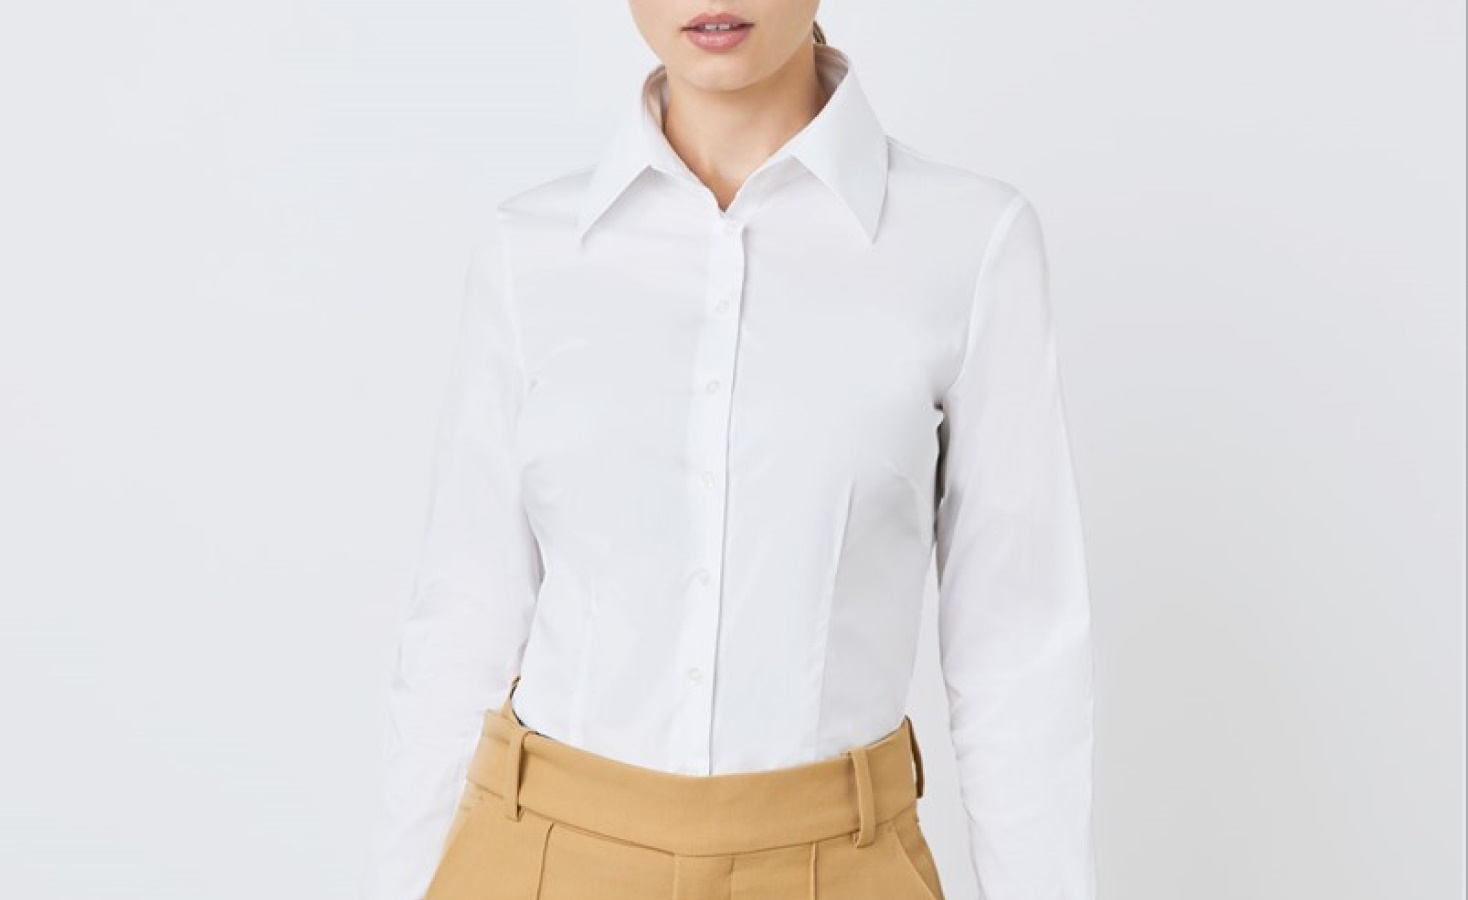 Slim Fit Bluse in Farbe Weiß online bestellen von der Marke Hawes & Curtis.